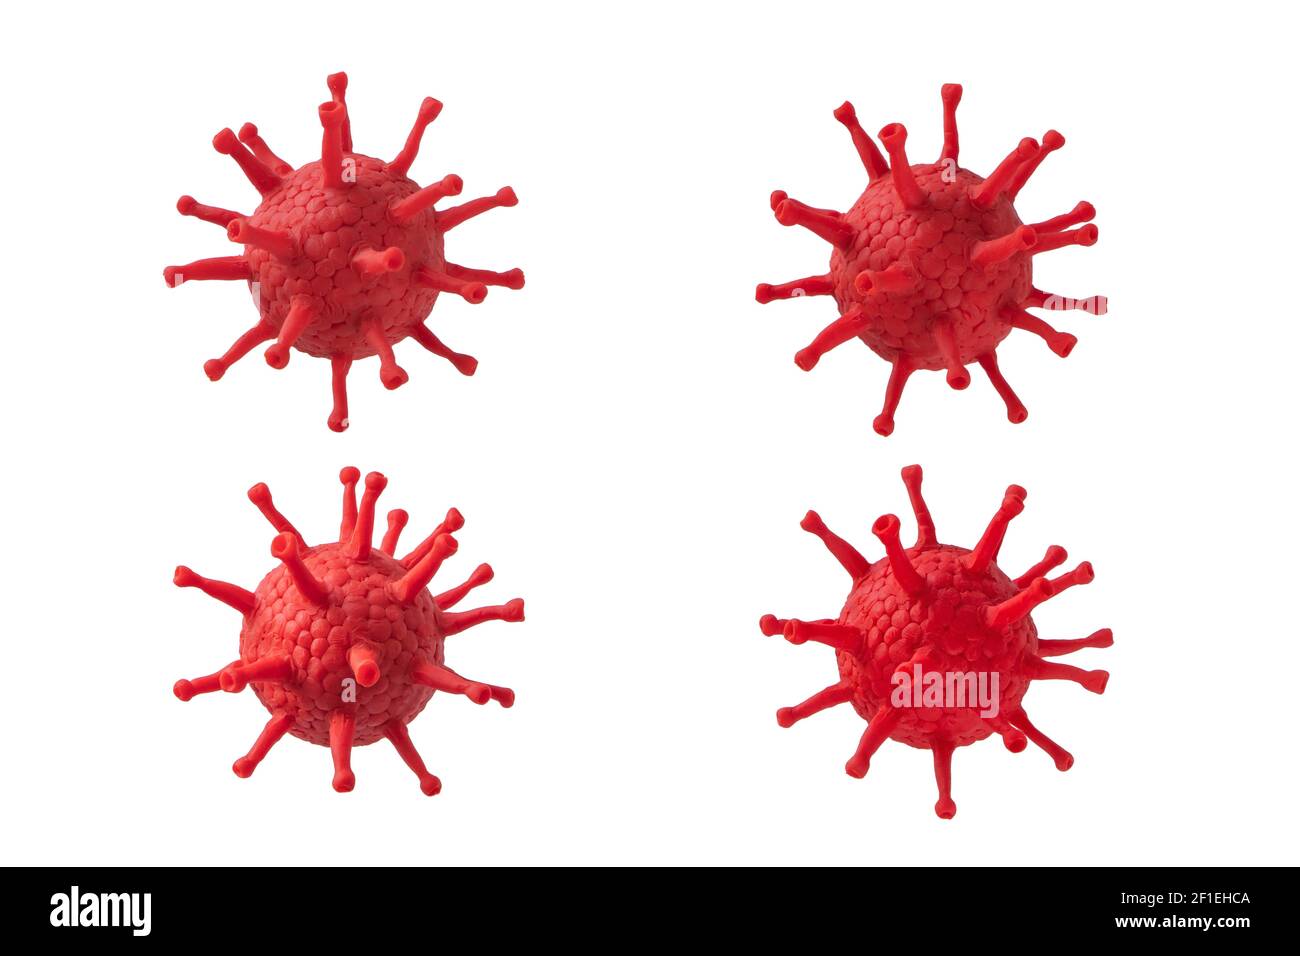 Quattro cellule di coronavirus sono isolate su bianco. Immagine 3d dei virioni Covid-19. Foto Stock